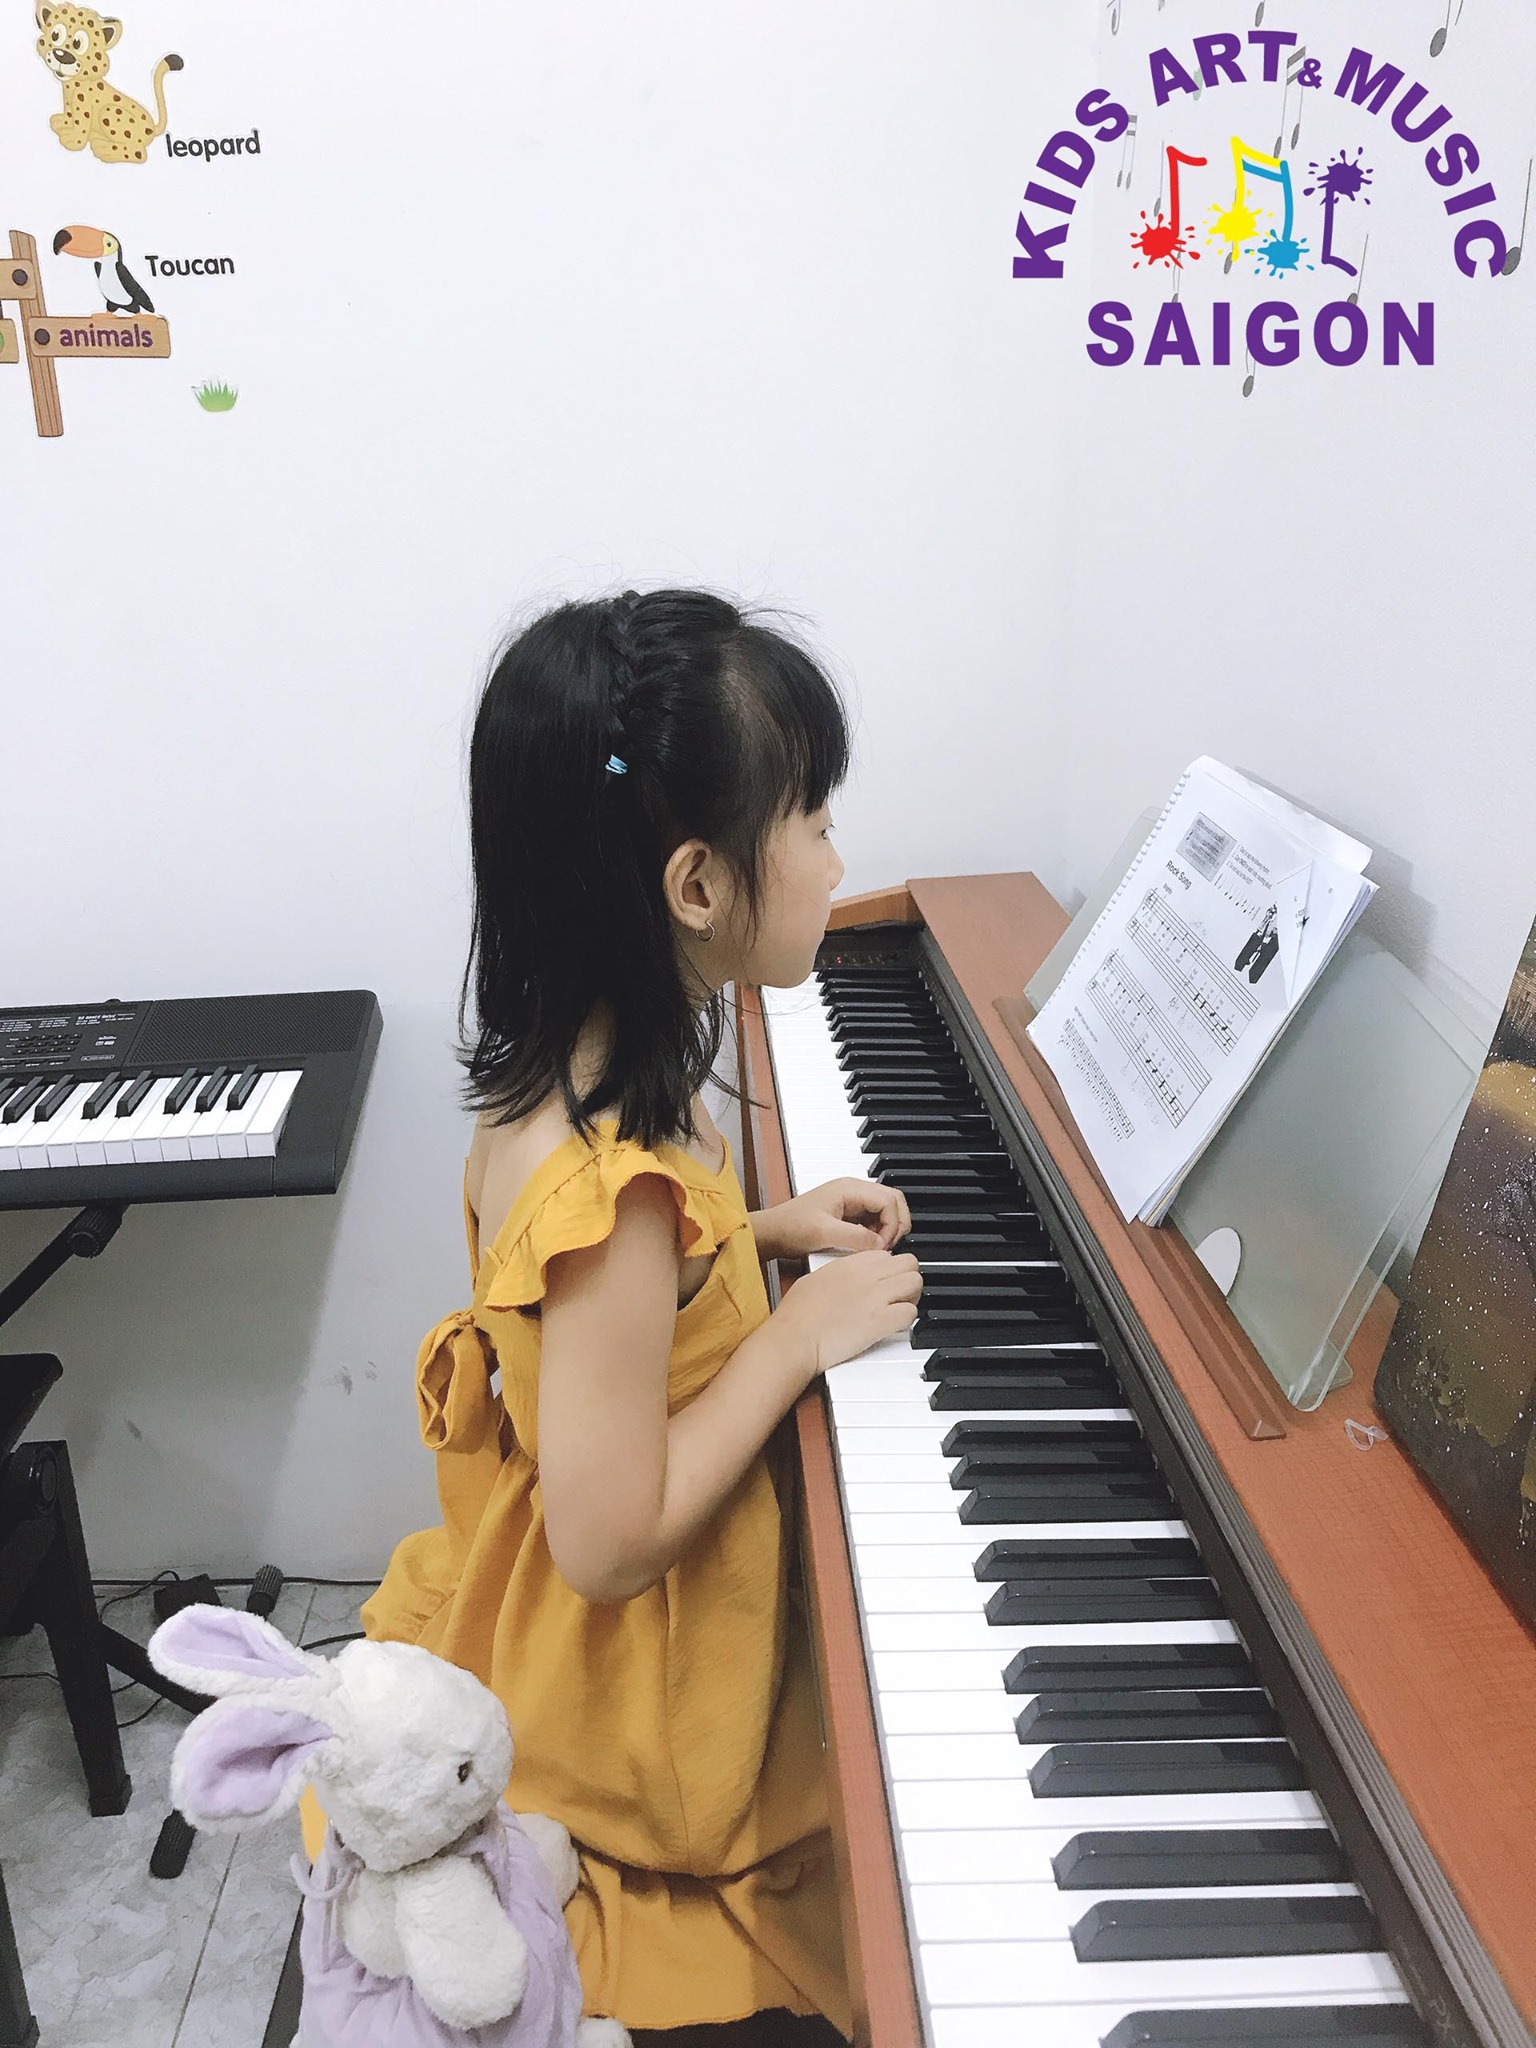 Ba mẹ cần lưu ý gì để có thể chơi đàn cùng con khi cho bé học piano? - hình ảnh 1